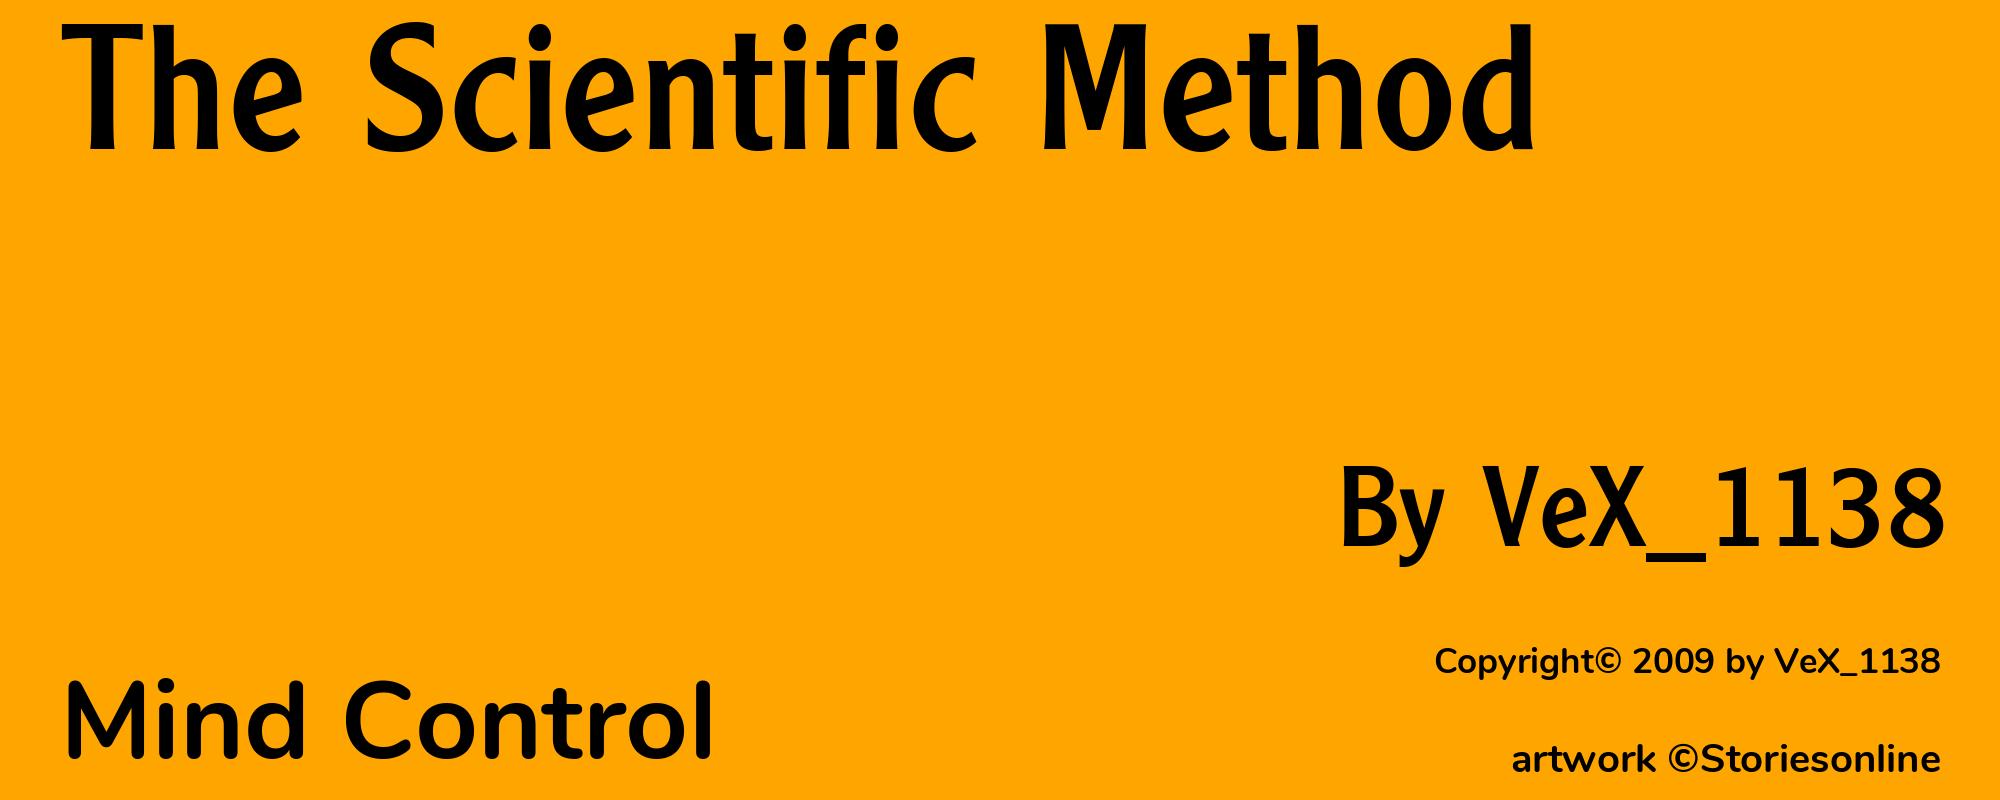 The Scientific Method - Cover